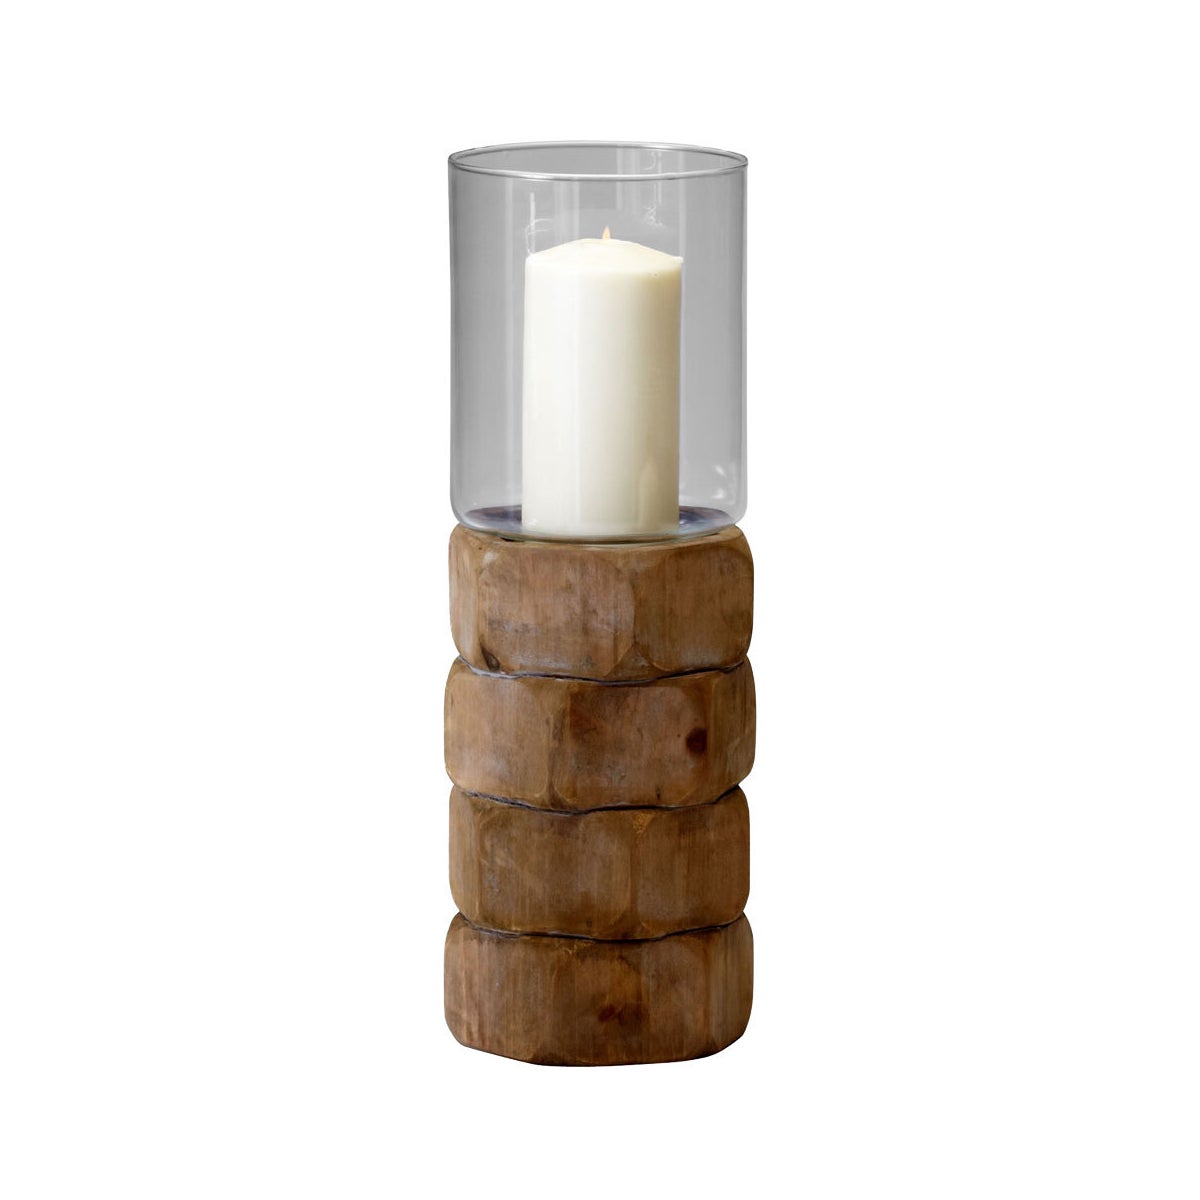 Hex Nut Candleholder | Natural Wood - Large